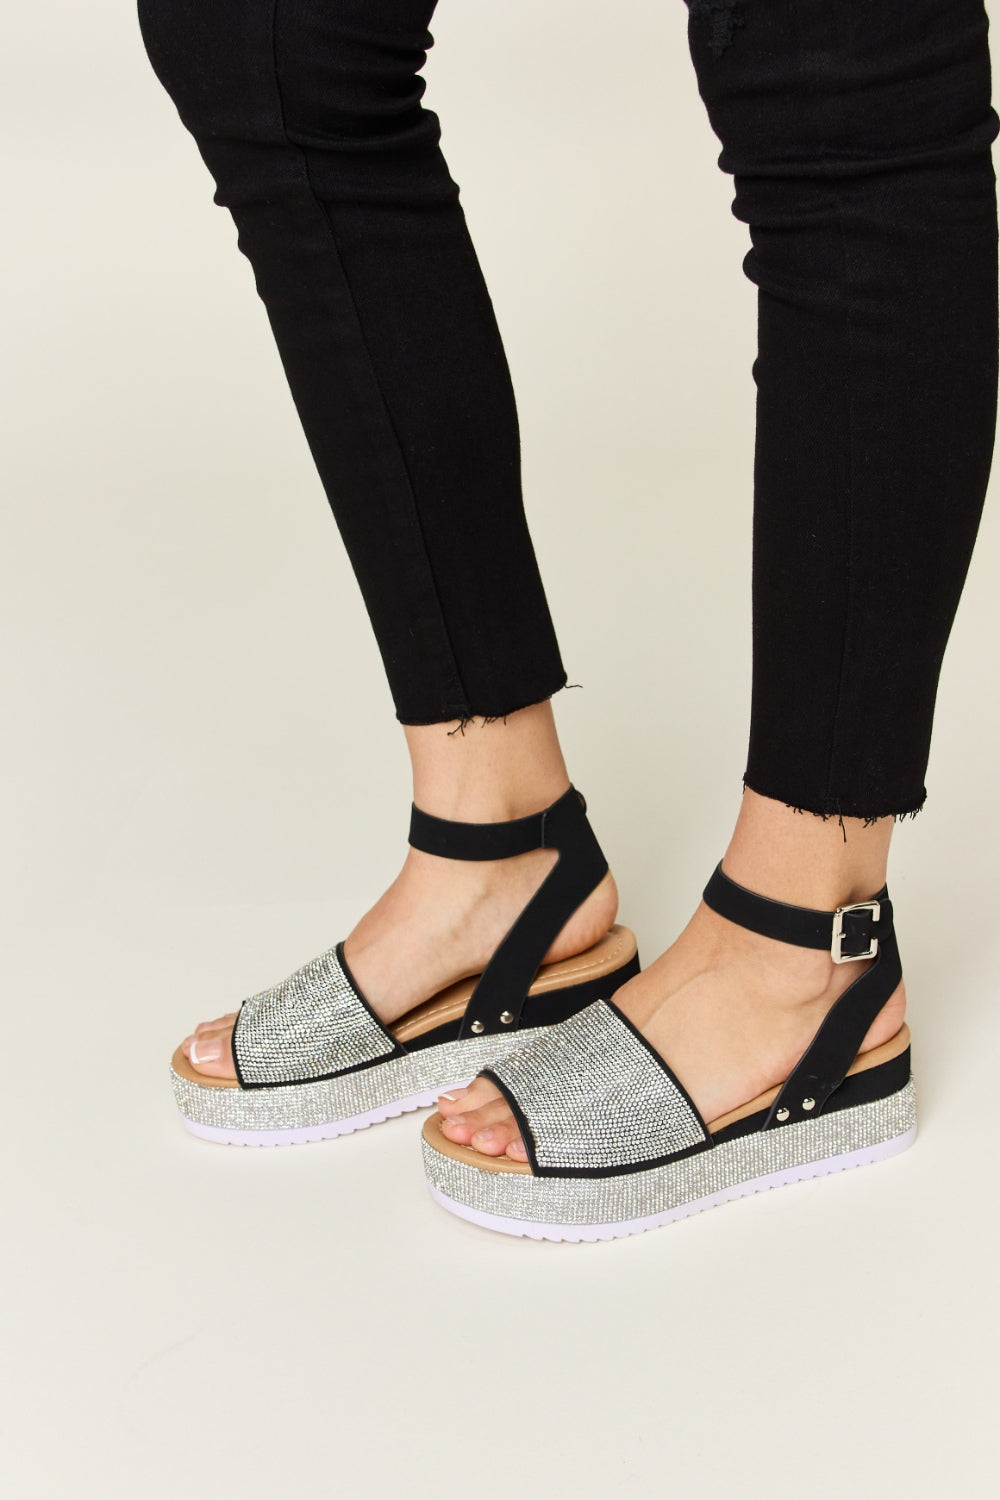 Black Rhinestone Buckle Strappy Wedge Sandals - Tigbuls Variety Fashion